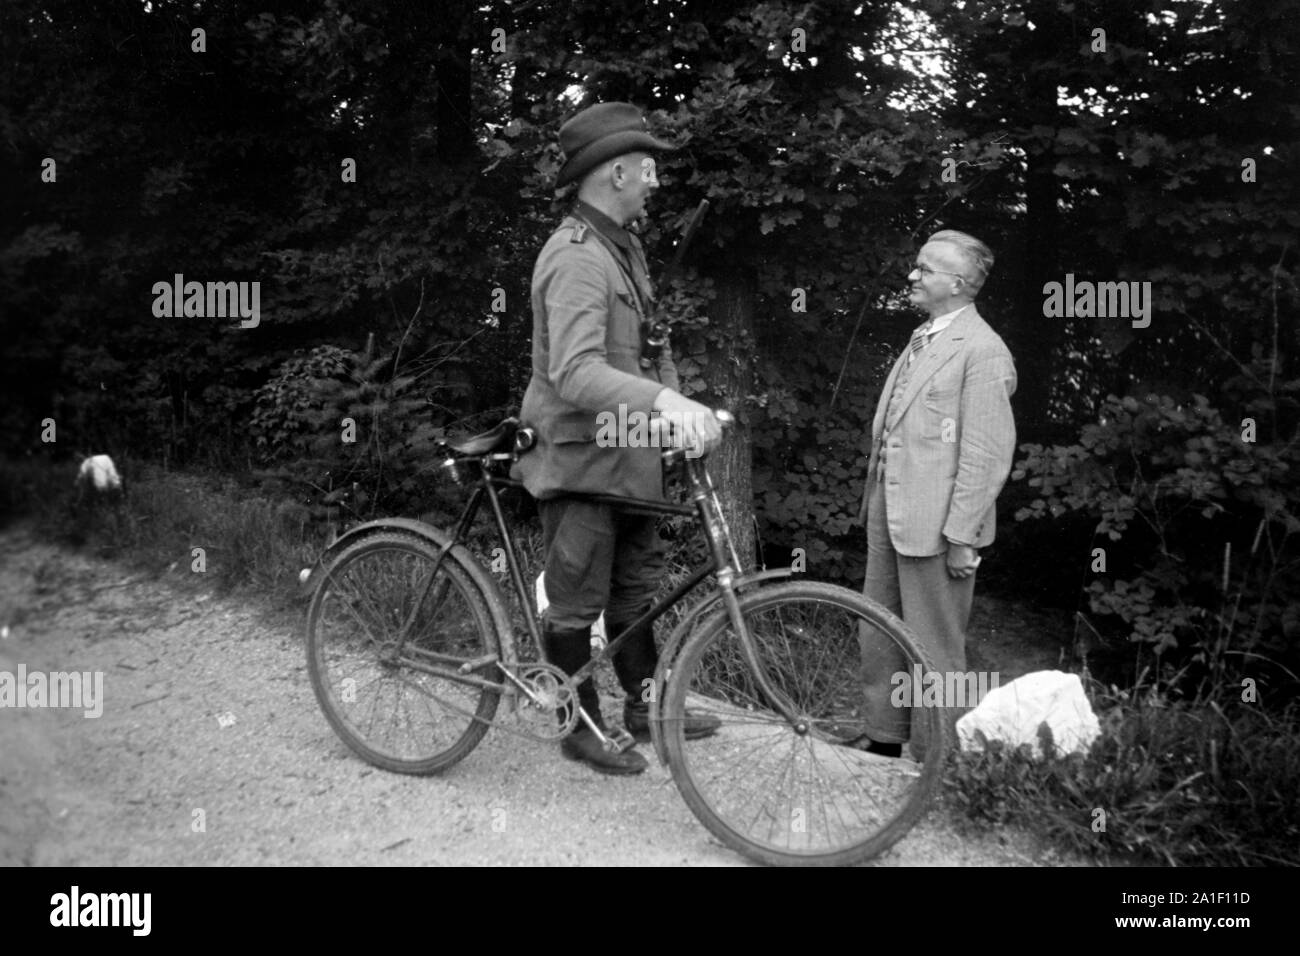 Ein Förster bei seinem Fahrrad unterhält sich mit einem älteren Herrn am Wegesrand, Deutschland 1939. Un garde forestier avec son vélo de parler à un vieil homme qu'il a rencontrés sur son chemin, Allemagne 1939. Banque D'Images